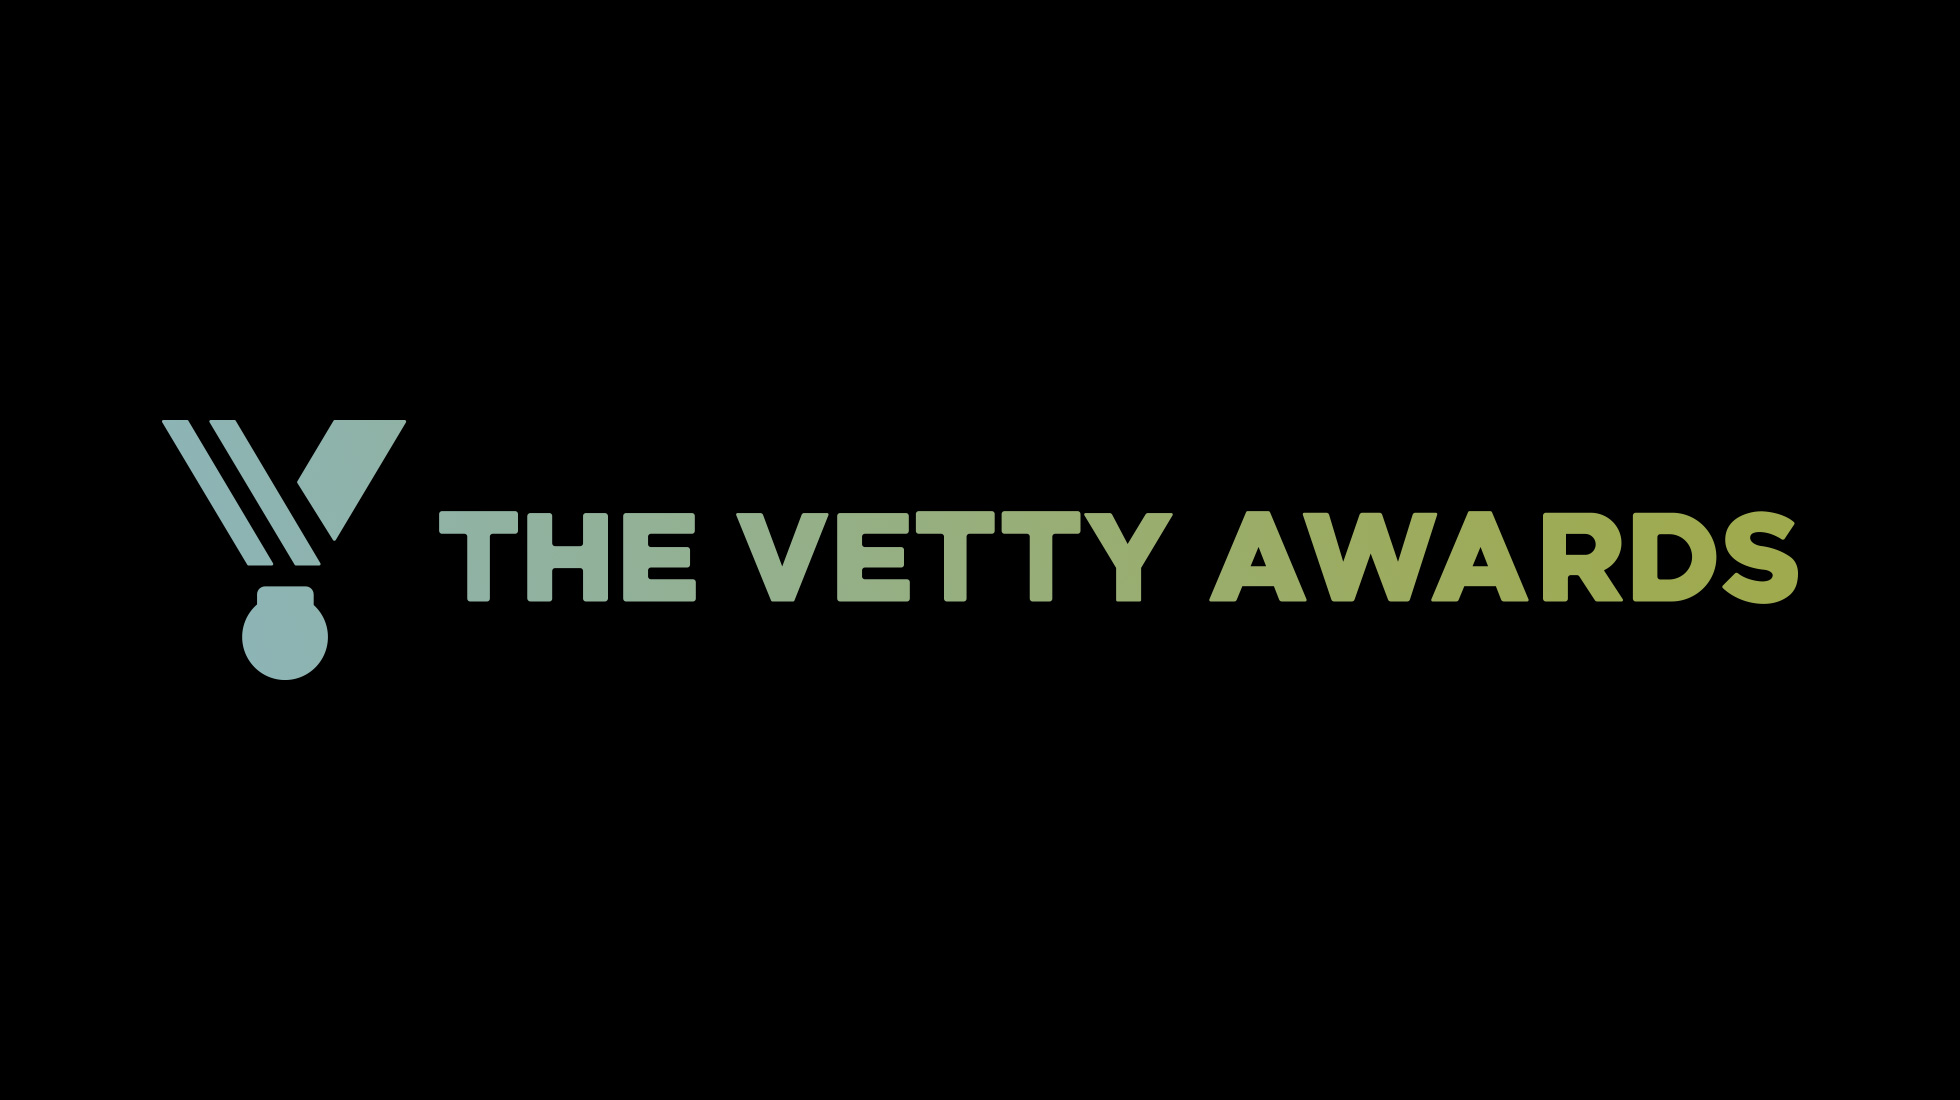 The Vetty Awards logo